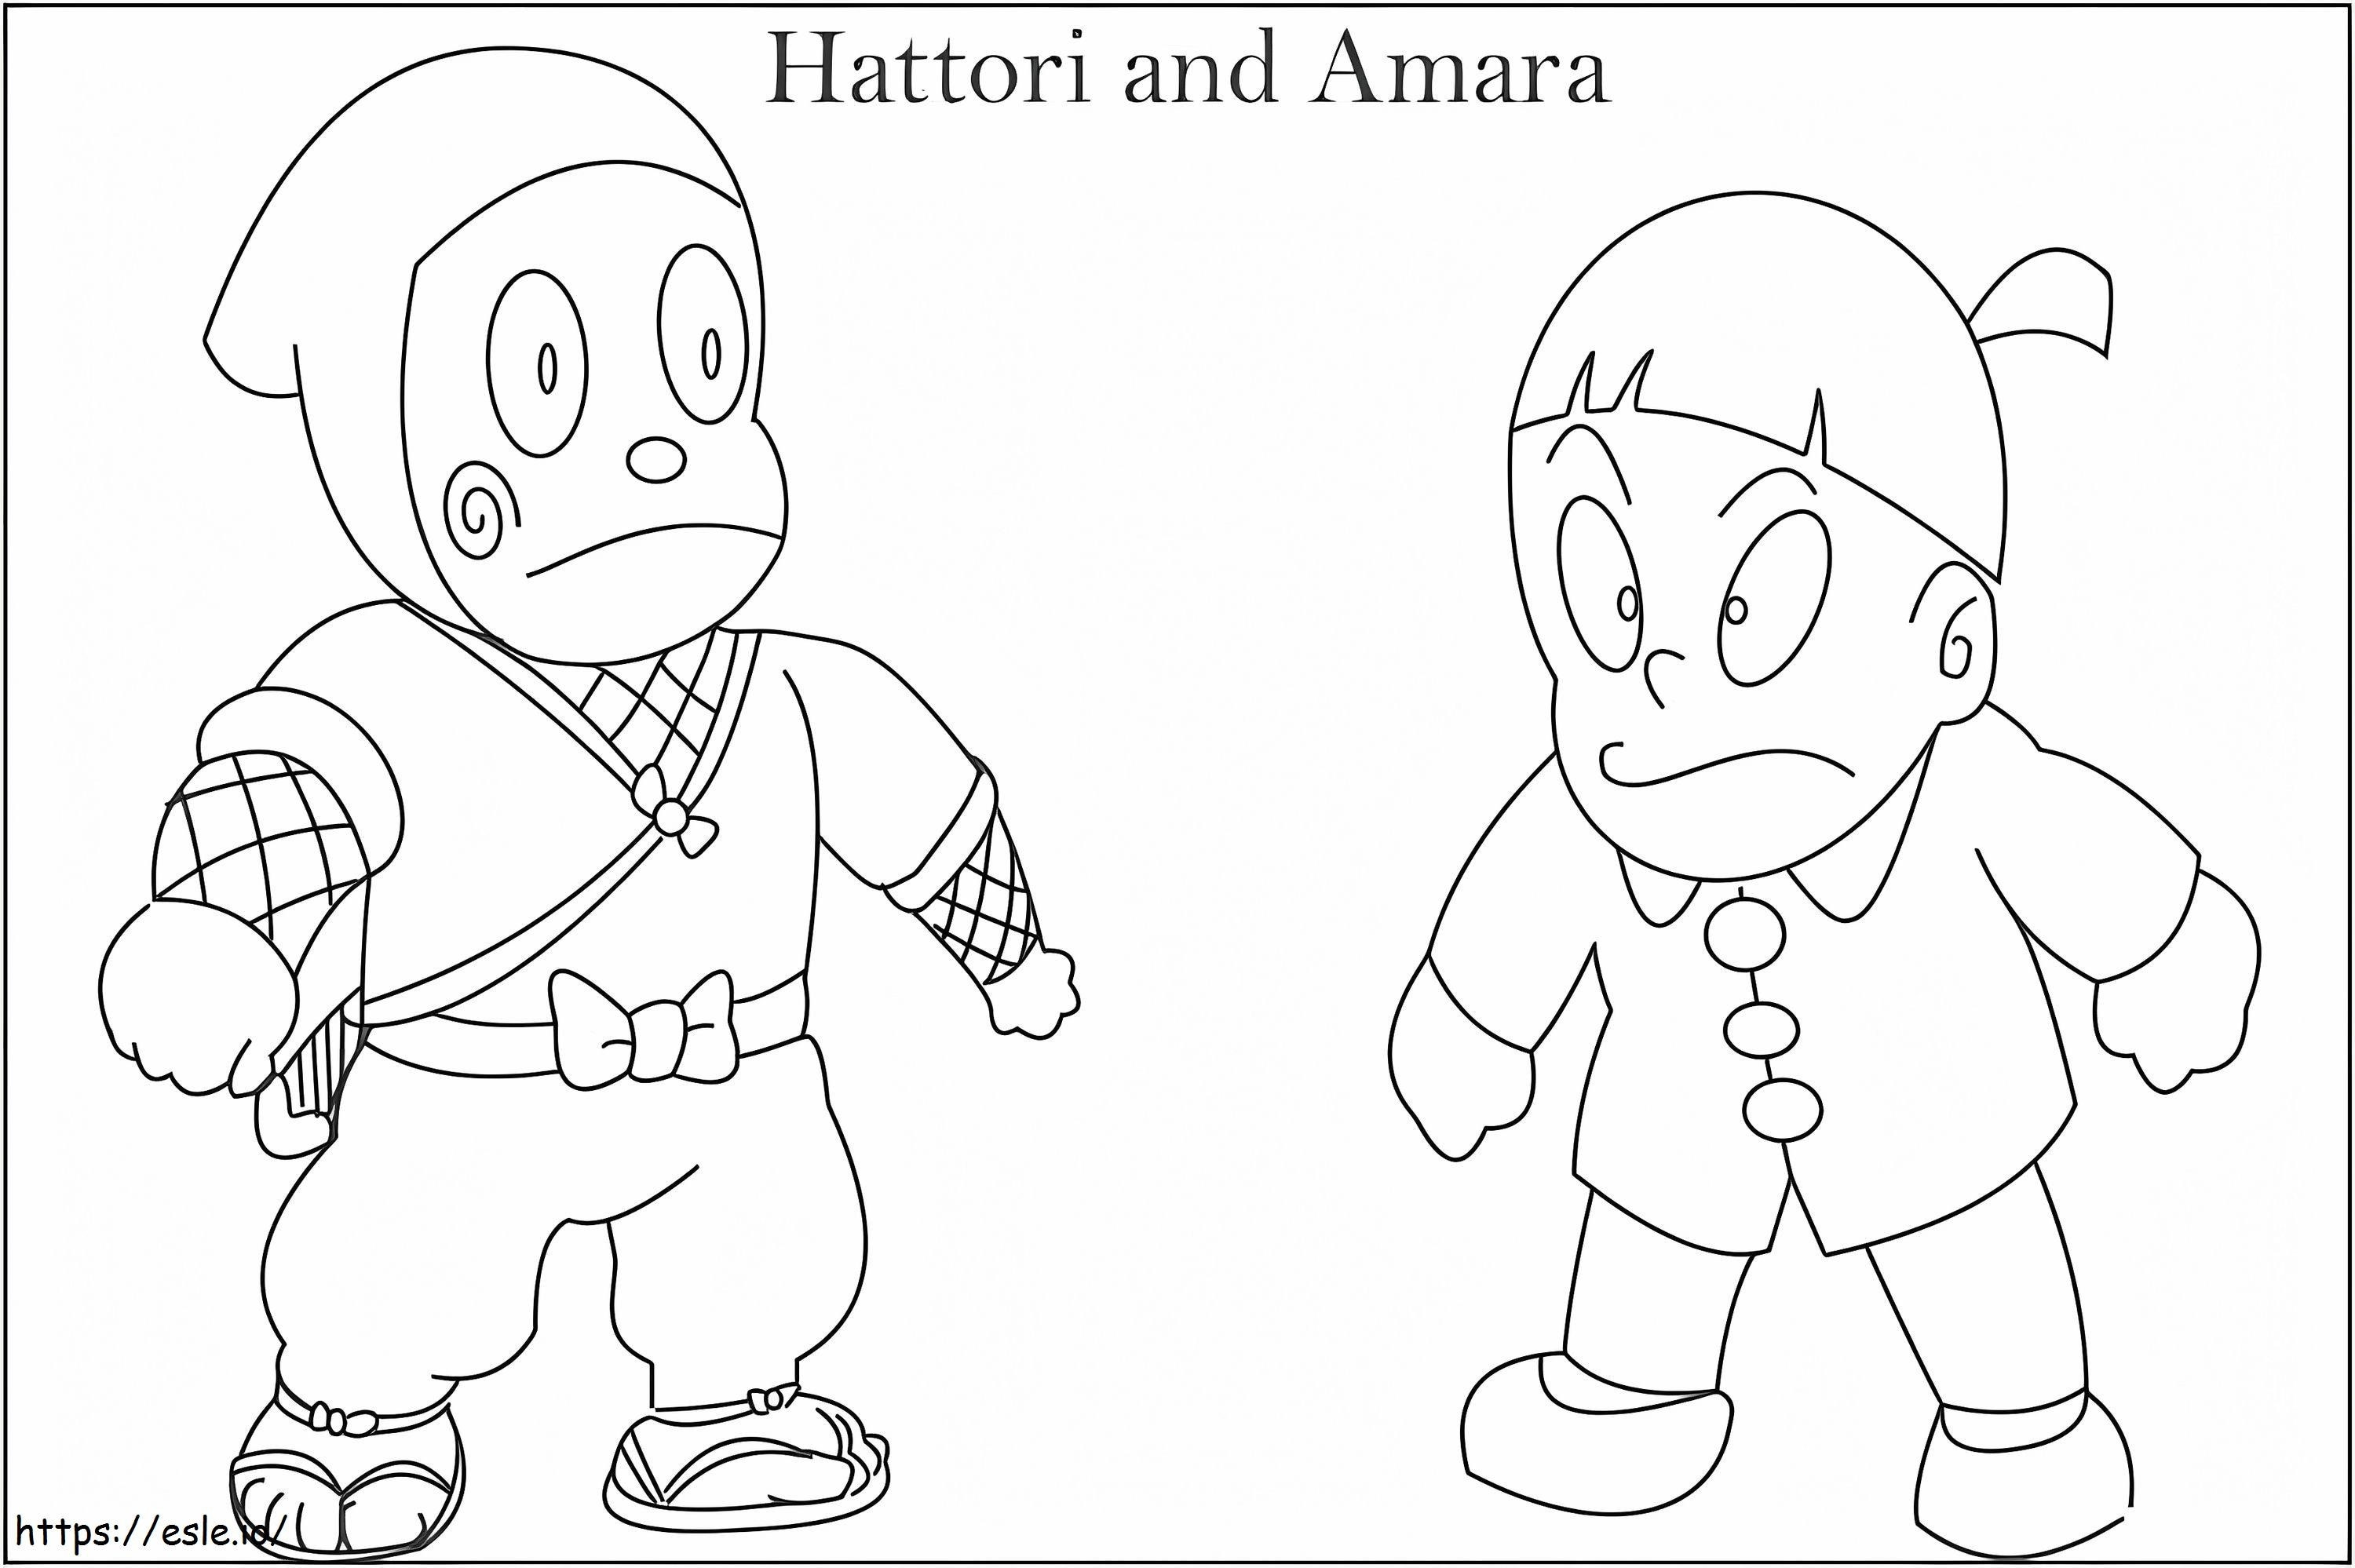 Hattori und Amara ausmalbilder